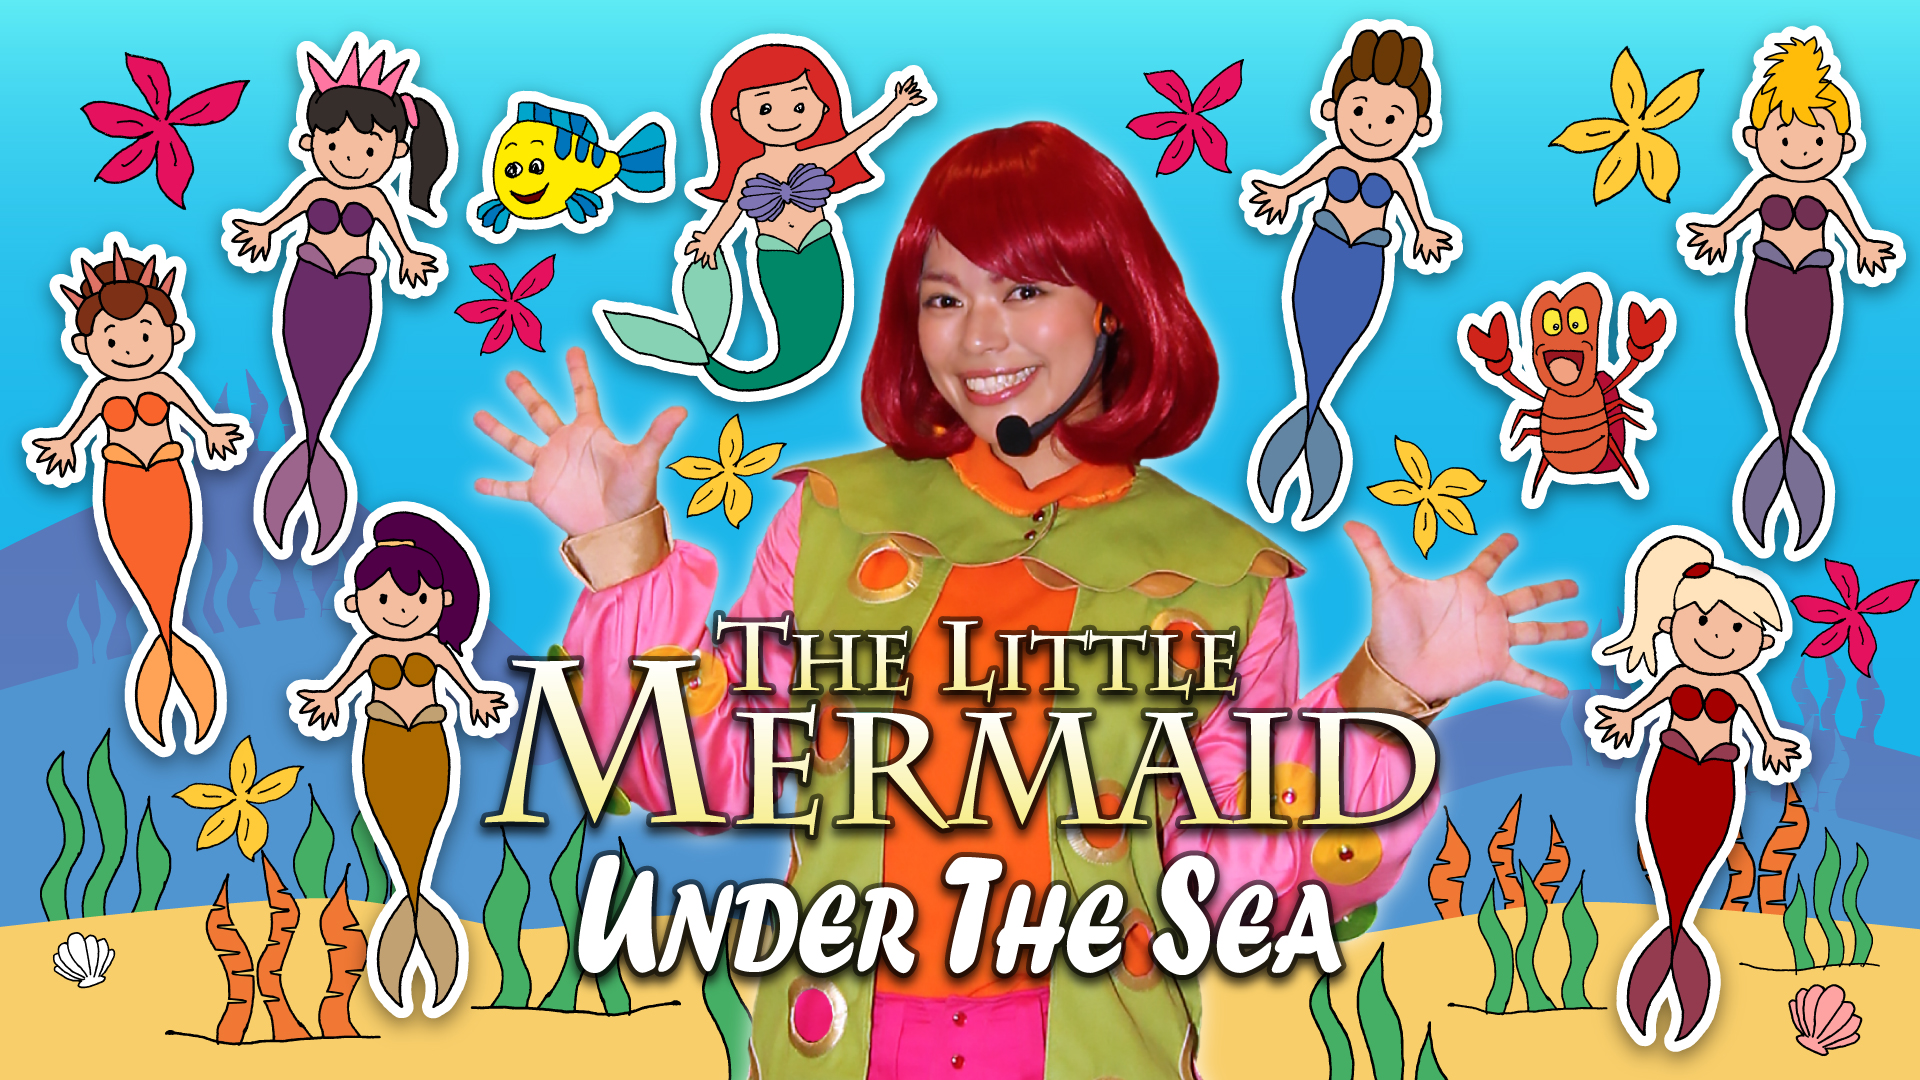 7月の歌 夏の歌 Under the Sea (The Little Mermaid)